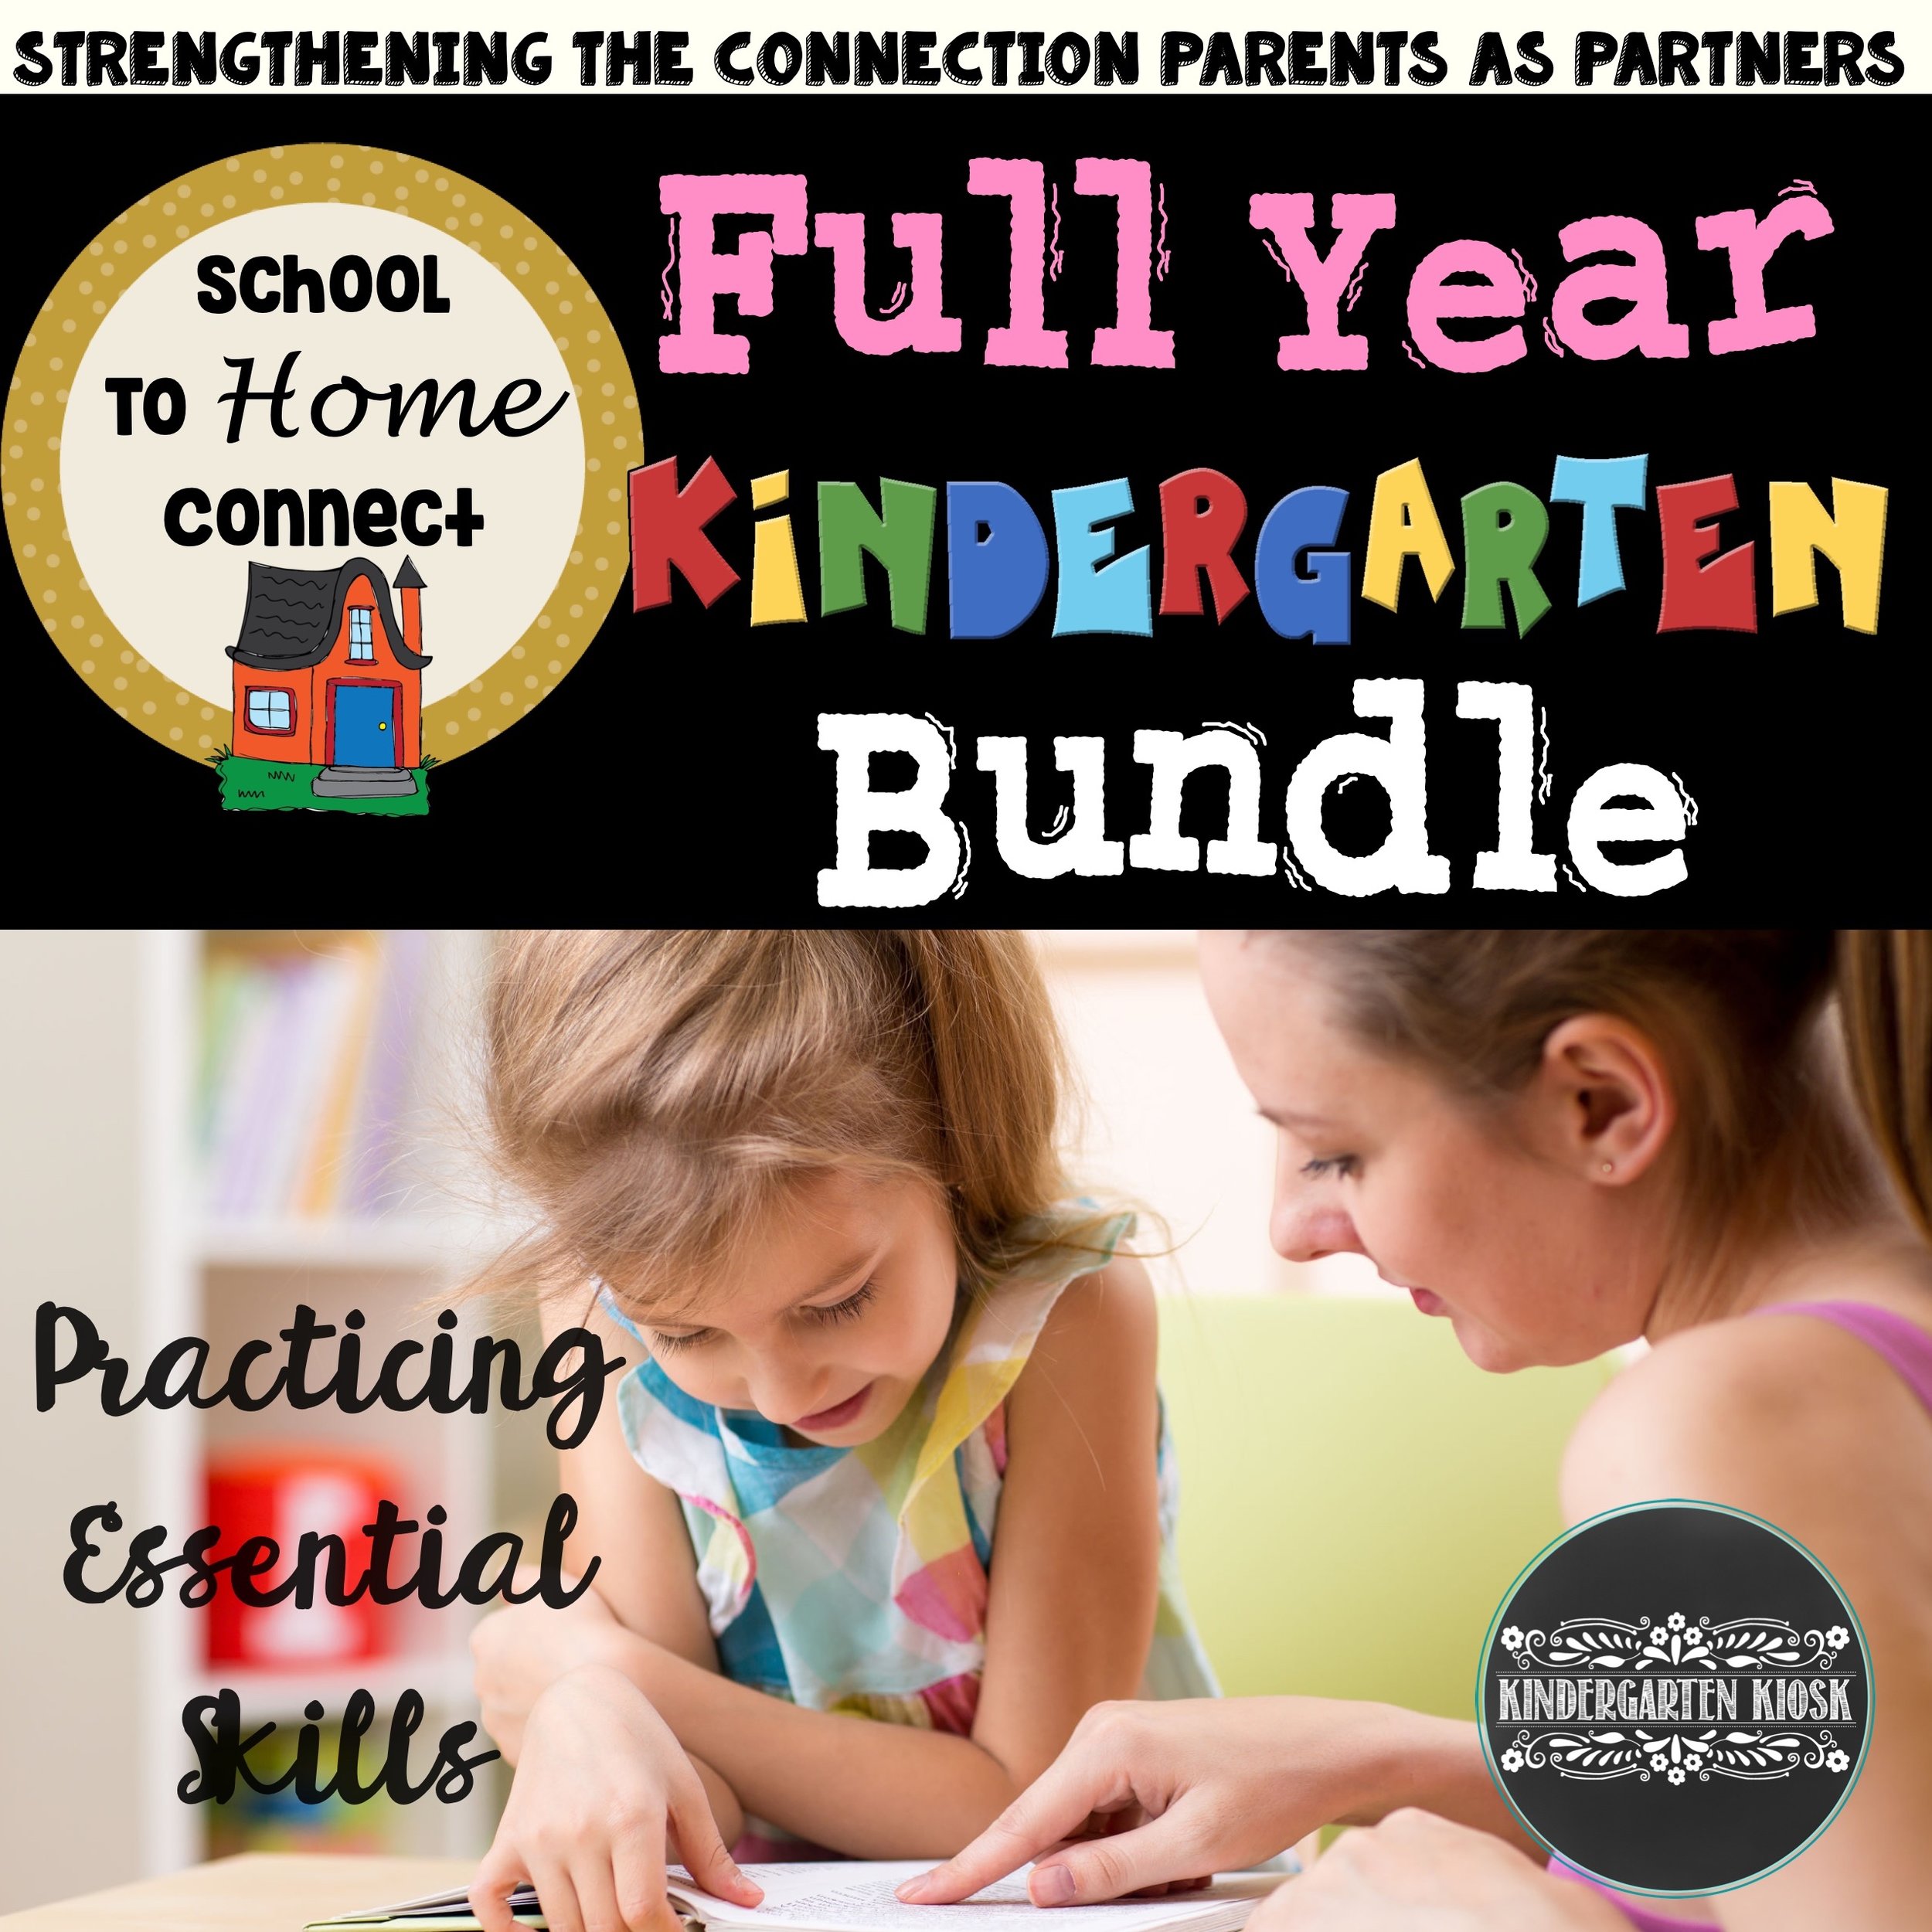 kindergarten-homework-kindergarten-kiosk